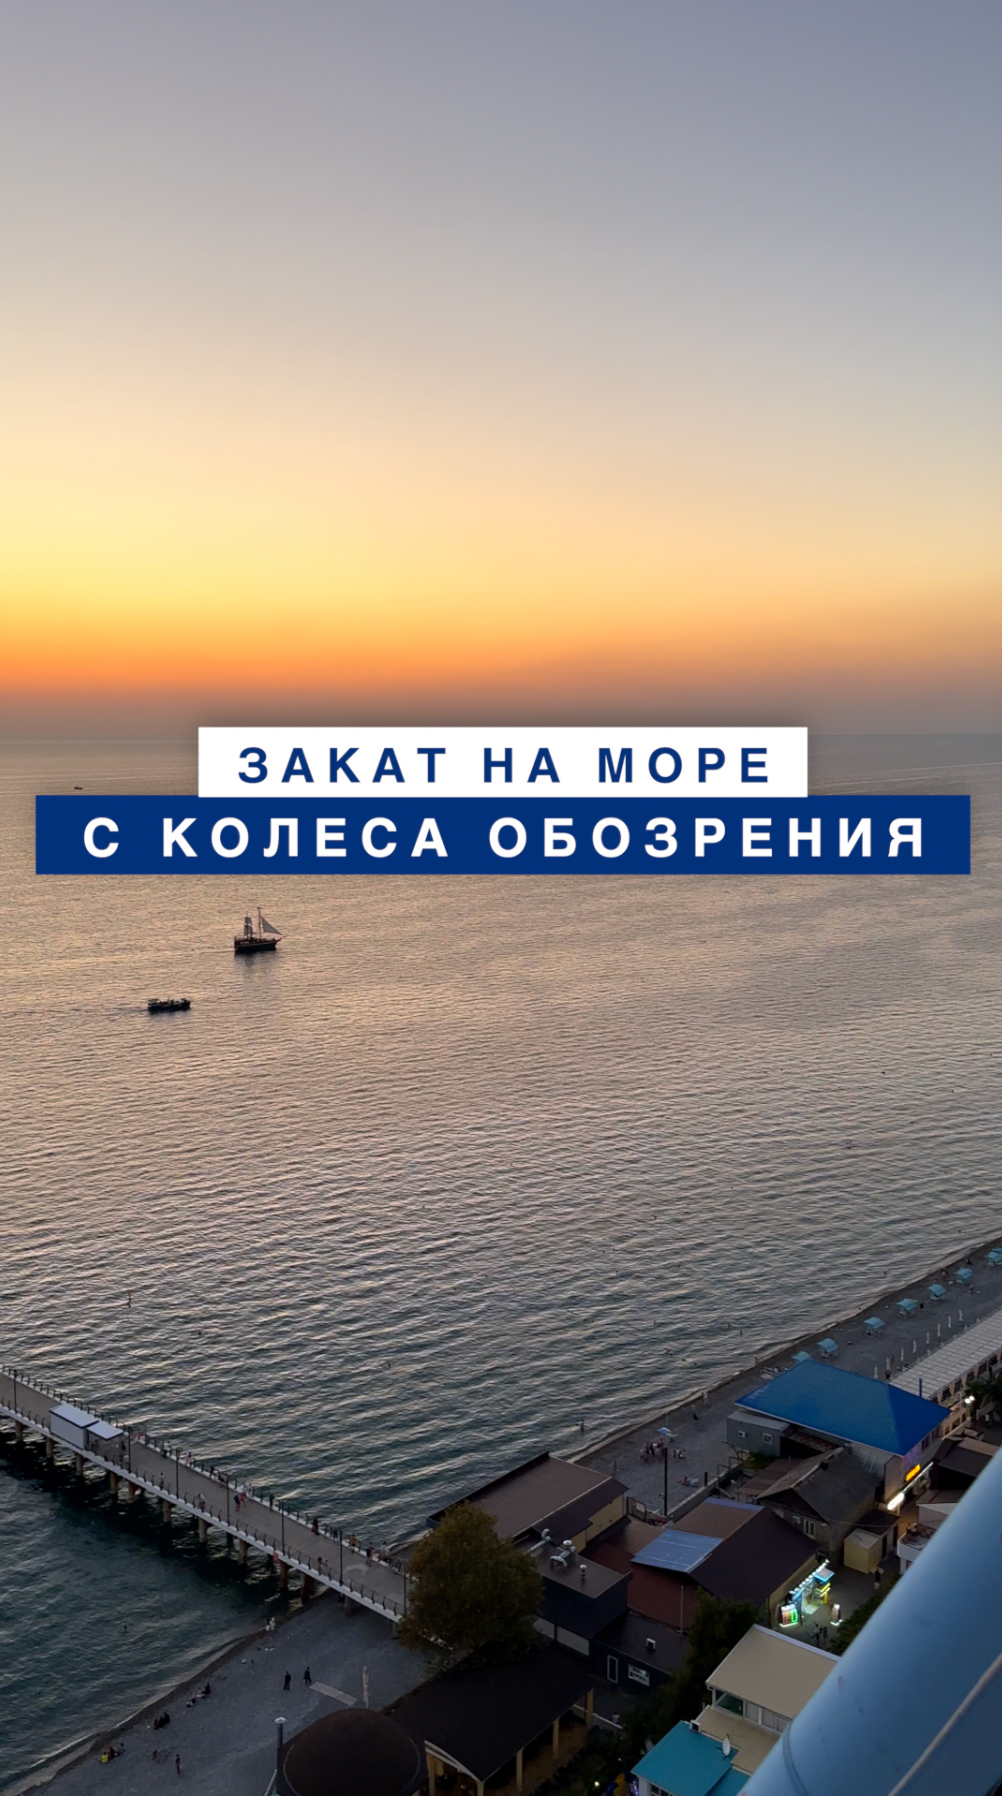 Скоро запустится колесо обозрения в Лазаревском, самое высокое колесо на побережье моря в России.